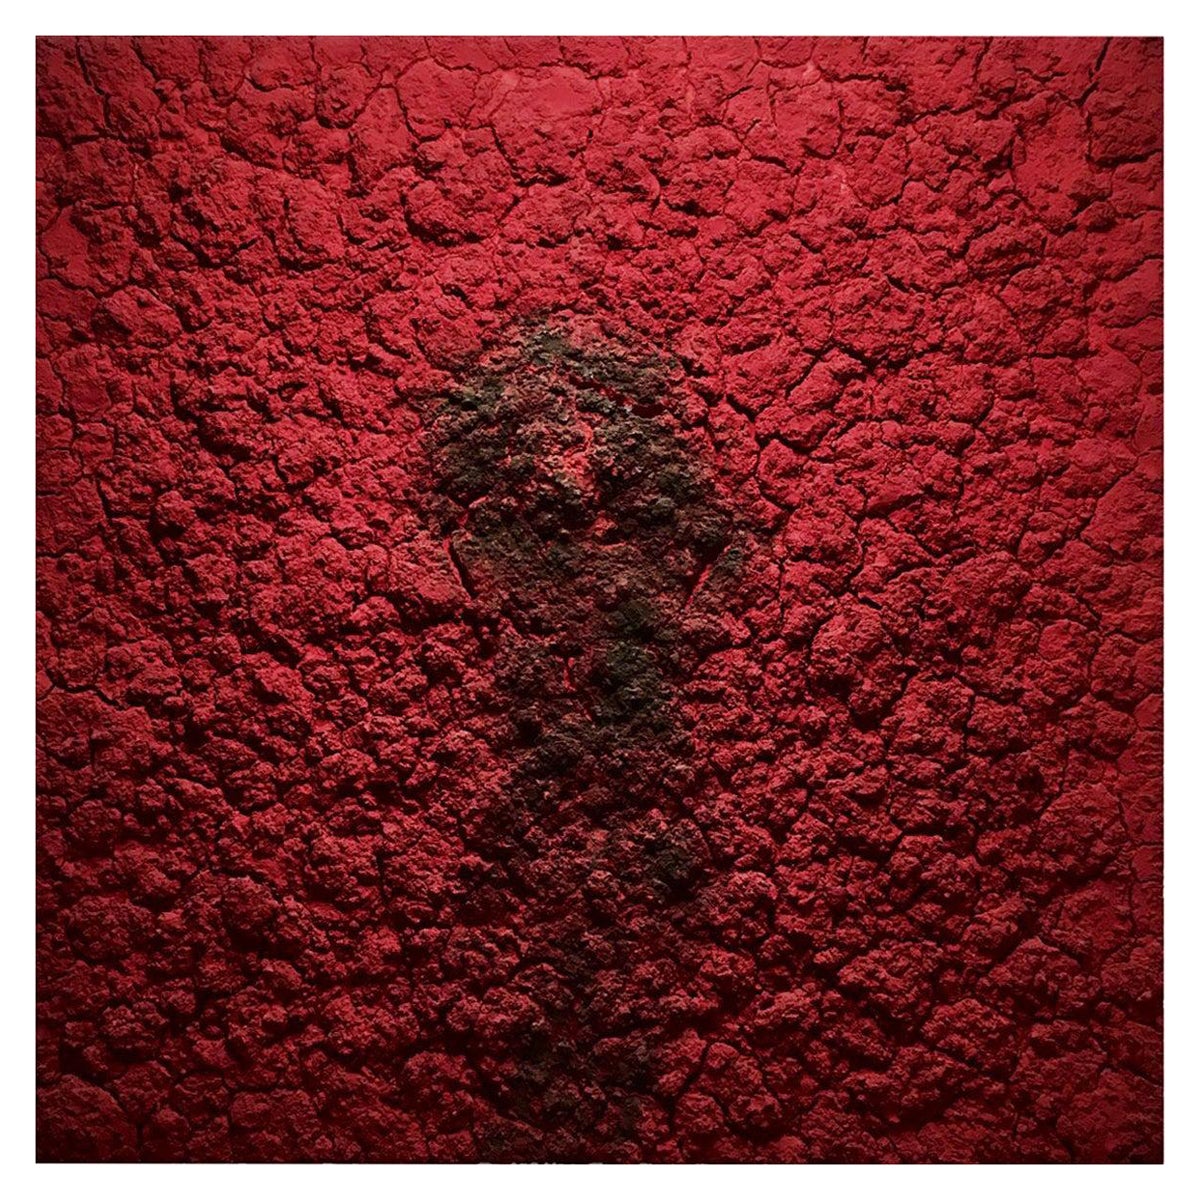 Œuvre d'art contemporaine en techniques mixtes sur toile rouge de Bosco, 2012.